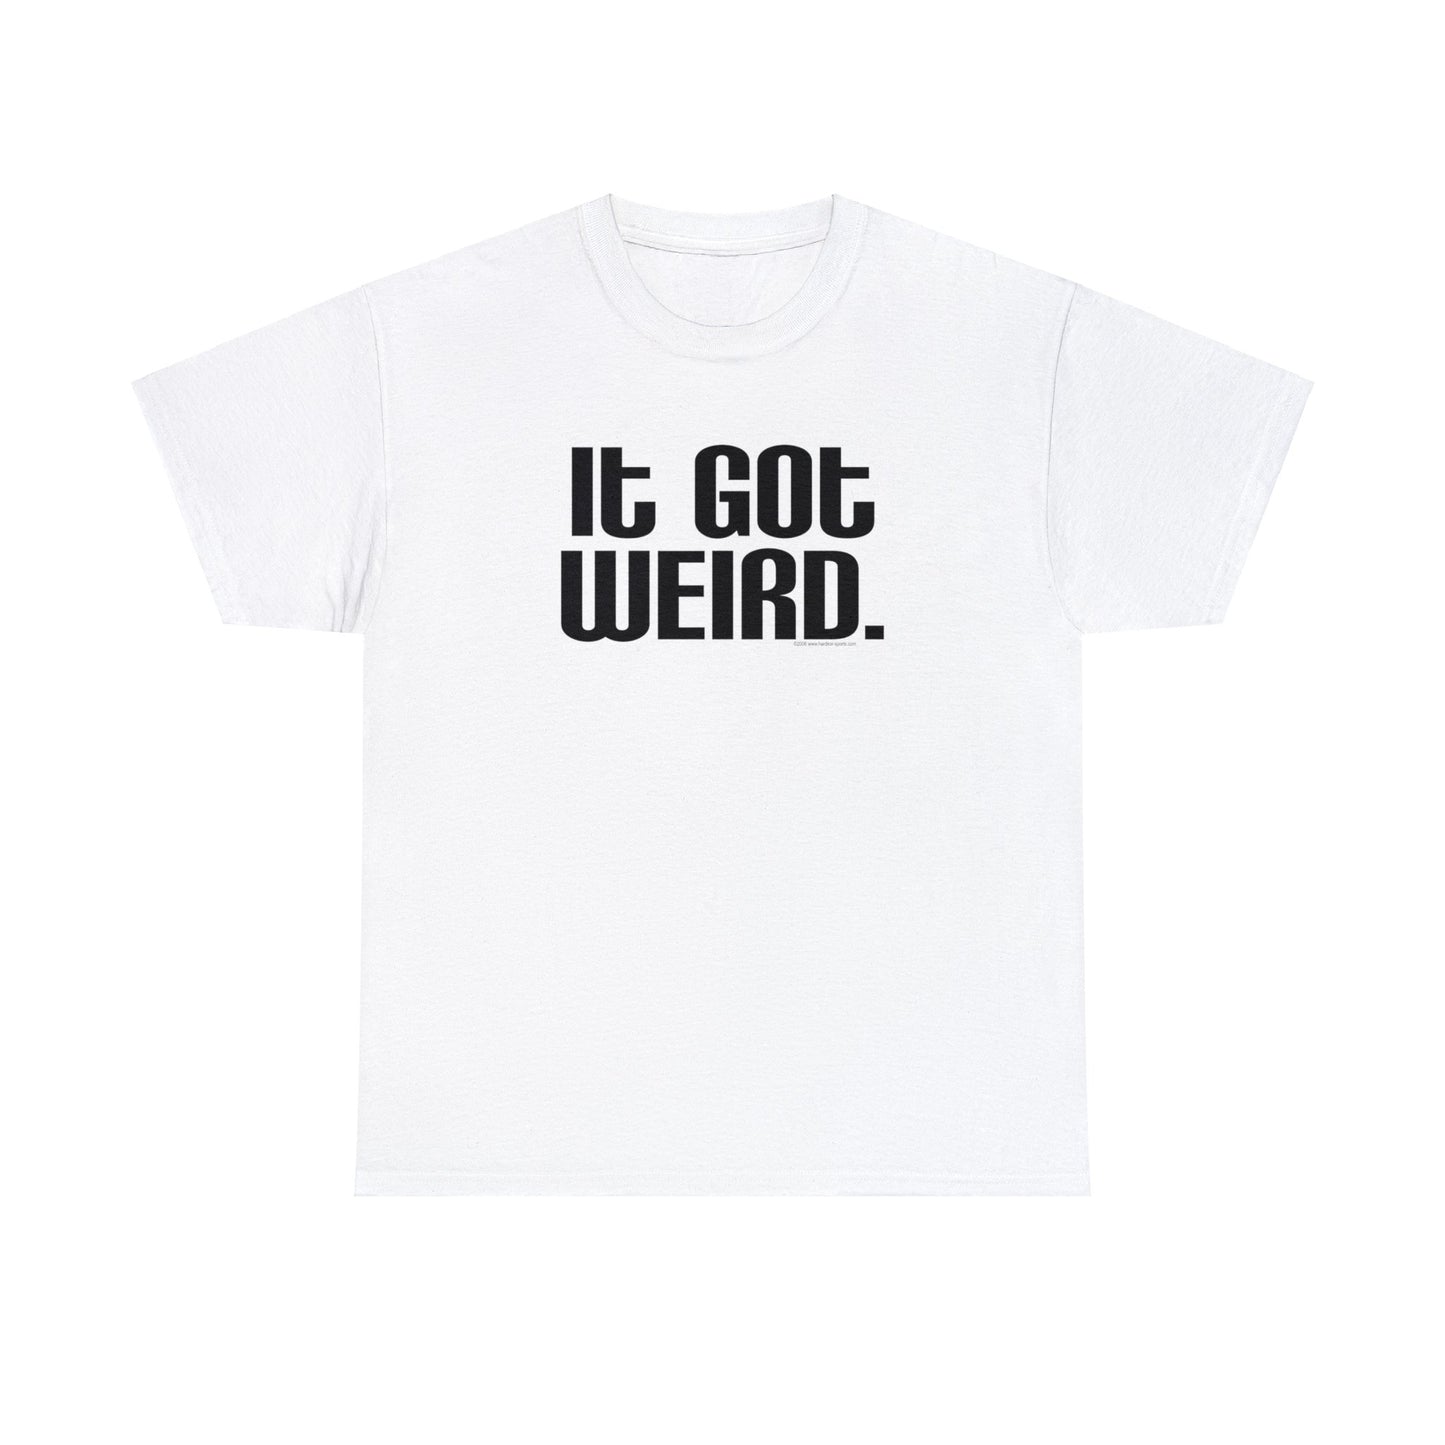 It Got Weird, funny t-shirt, Political Tee, Weird T-Shirt, Keep it Weird, Keep Portland Weird, humorous t-shirt, ironic t-shirt